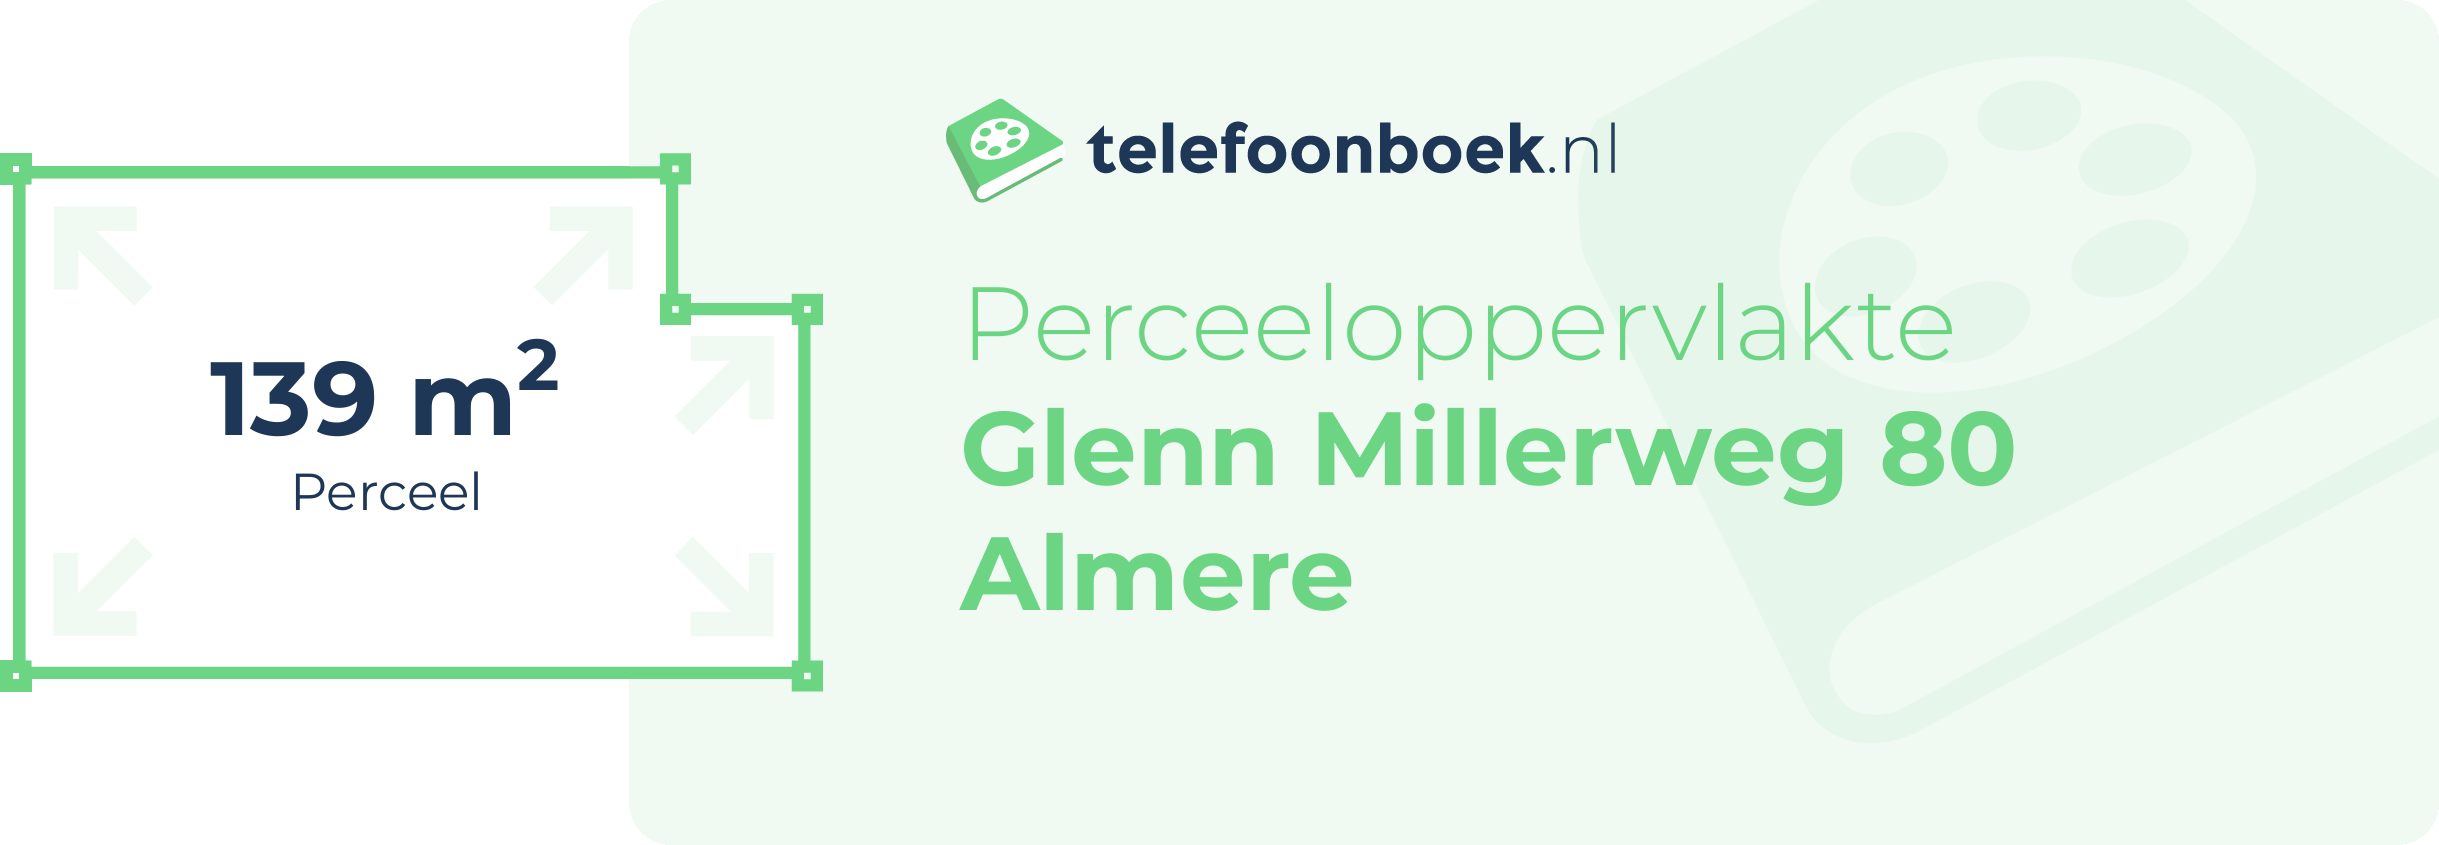 Perceeloppervlakte Glenn Millerweg 80 Almere